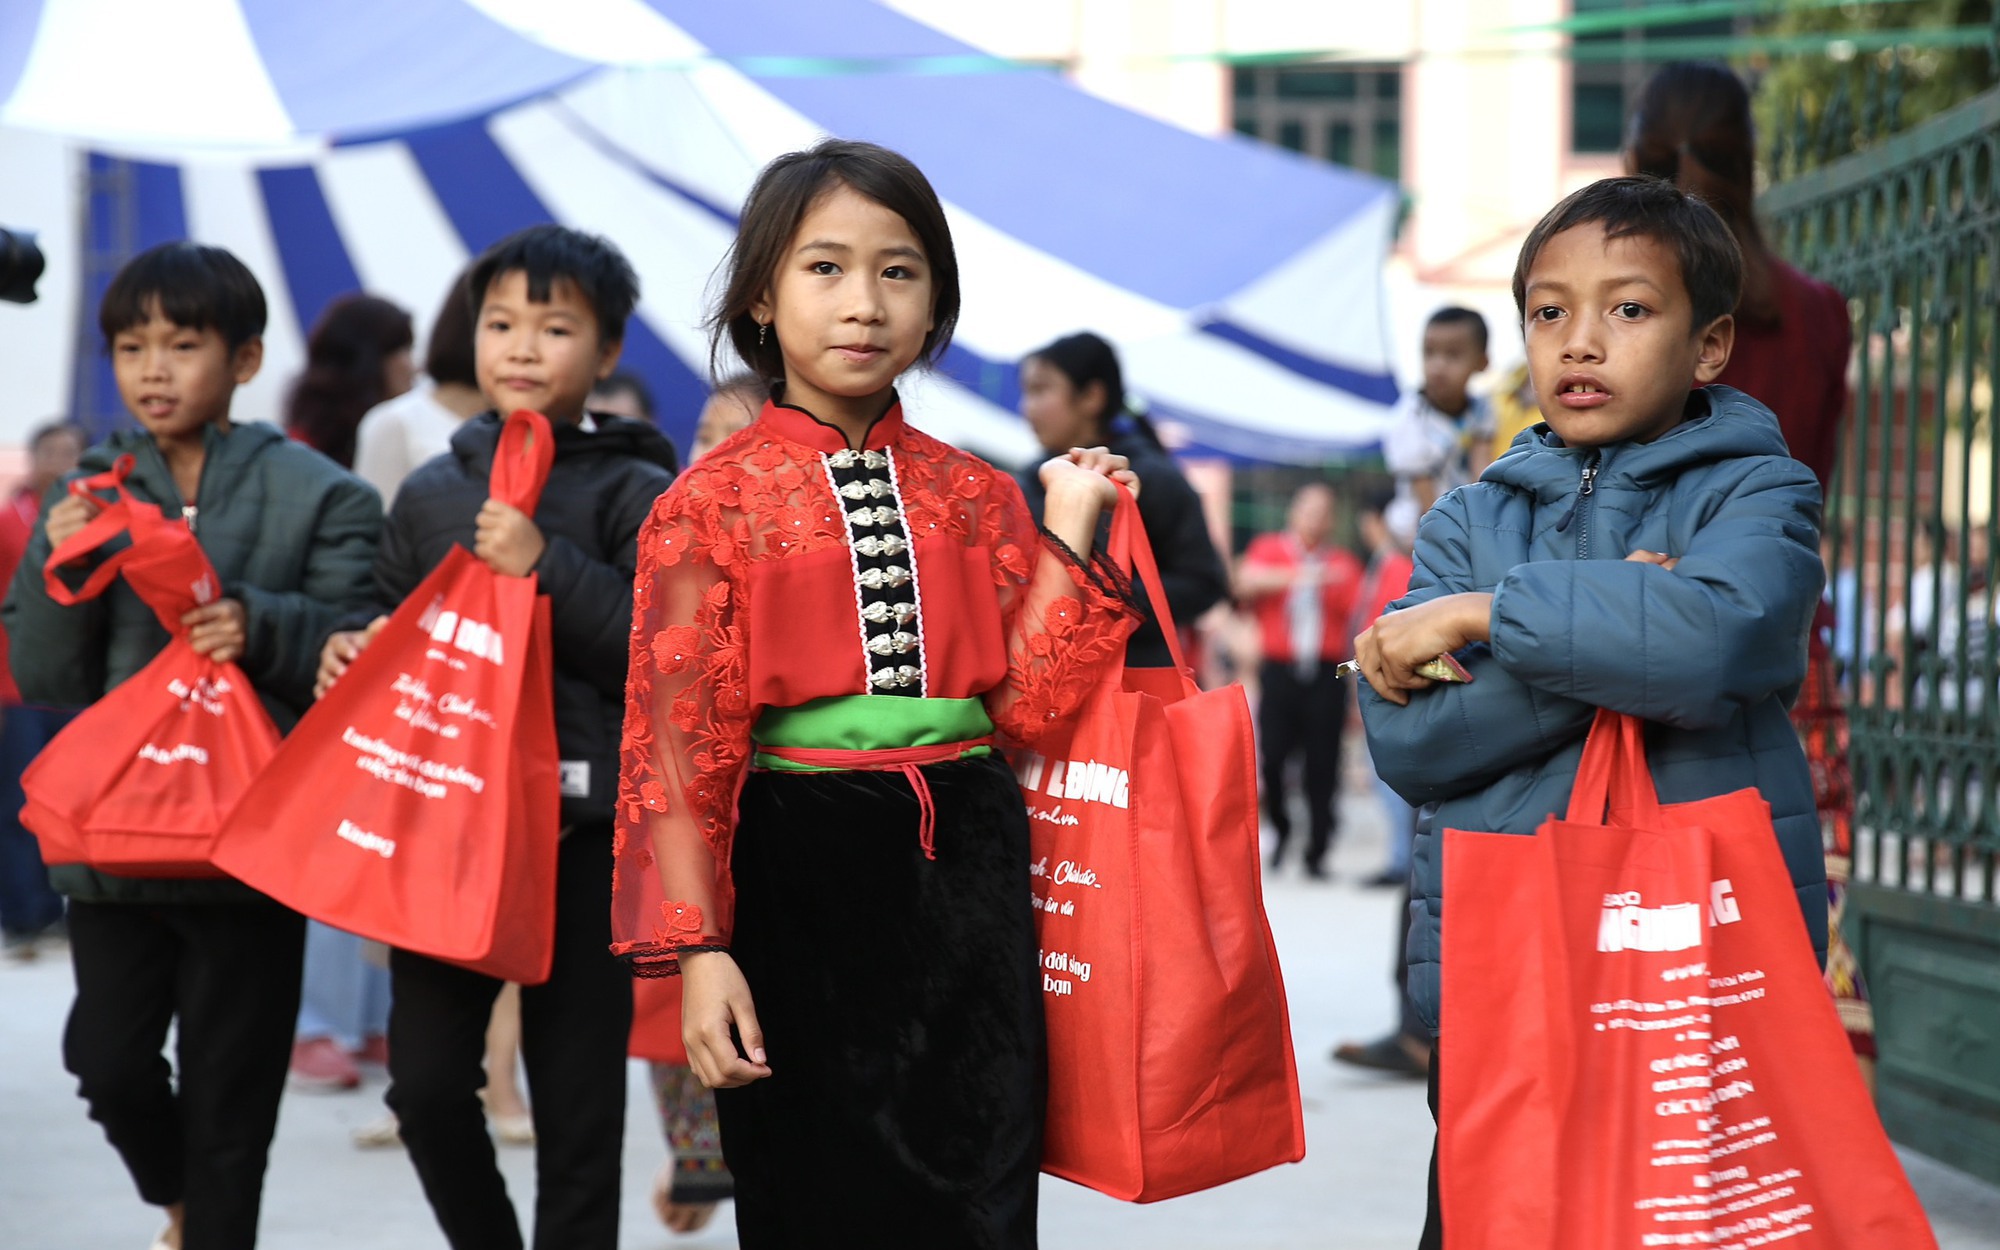 Mang áo ấm và tấm lòng đến với học sinh vùng biên giới Điện Biên